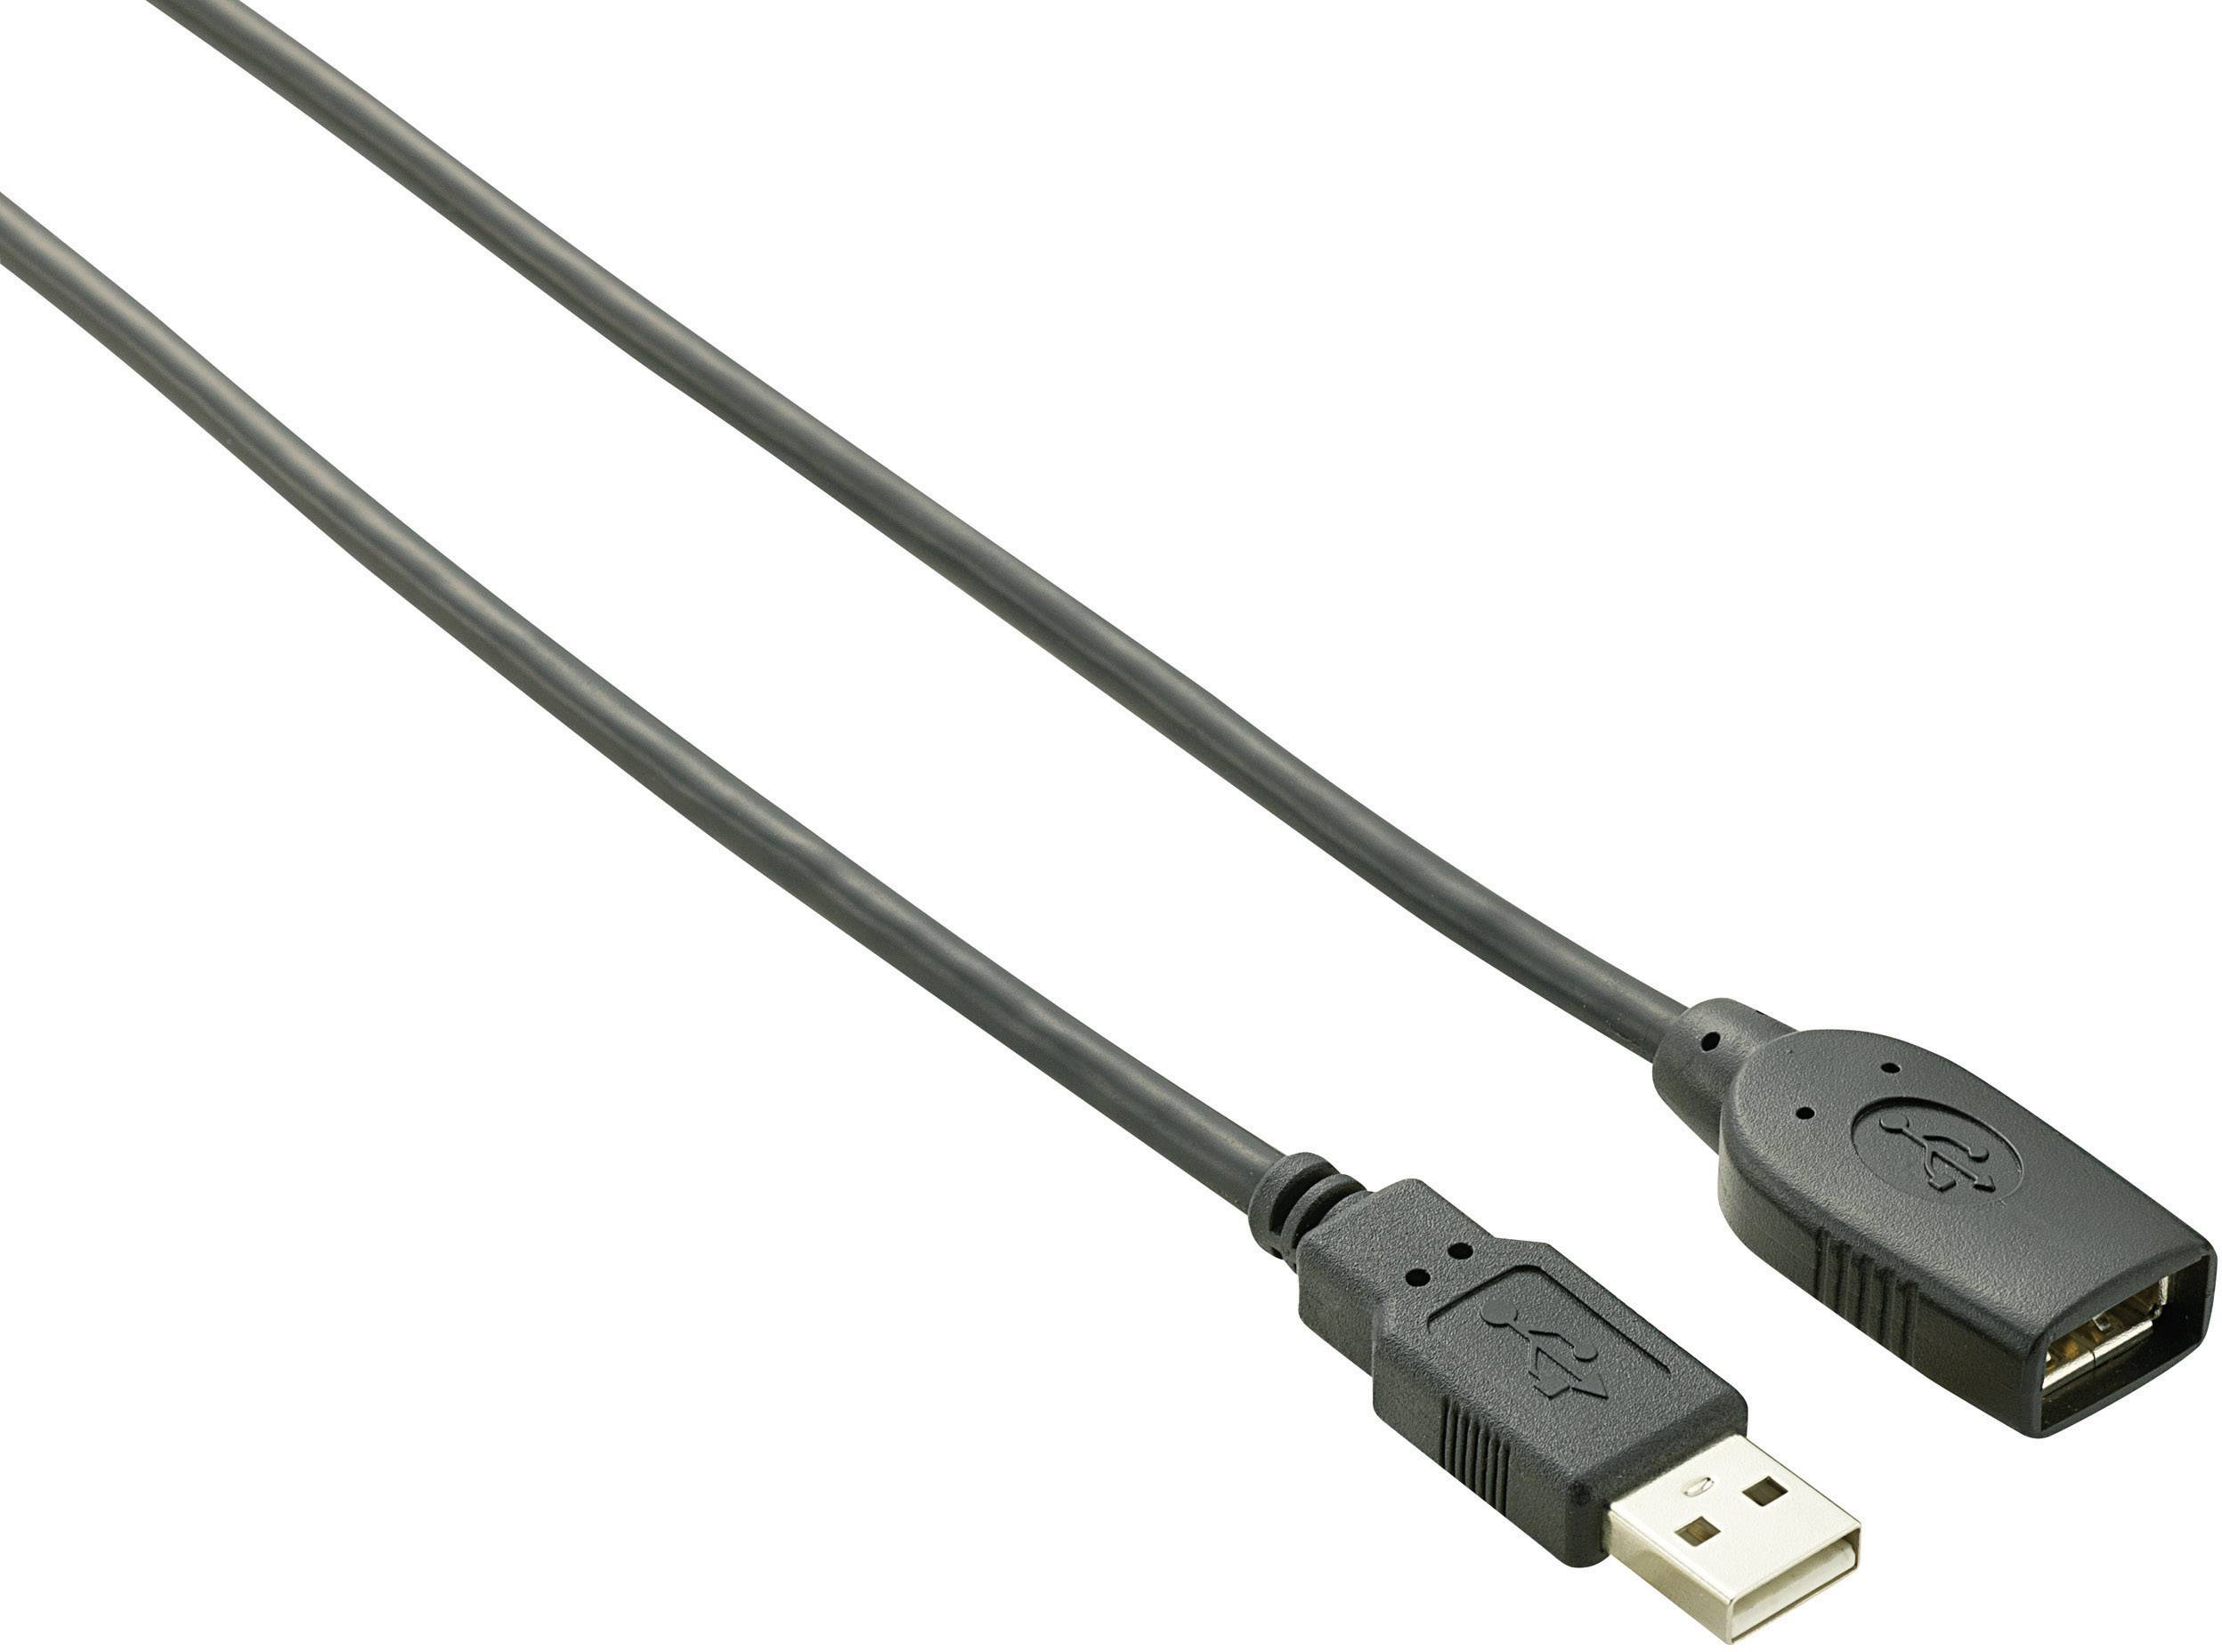 Lijkt op Verbeteren houding Renkforce USB cable USB 2.0 USB-A plug, USB-A socket 10.00 m Black gold  plated connectors RF-4096104 | Conrad.com